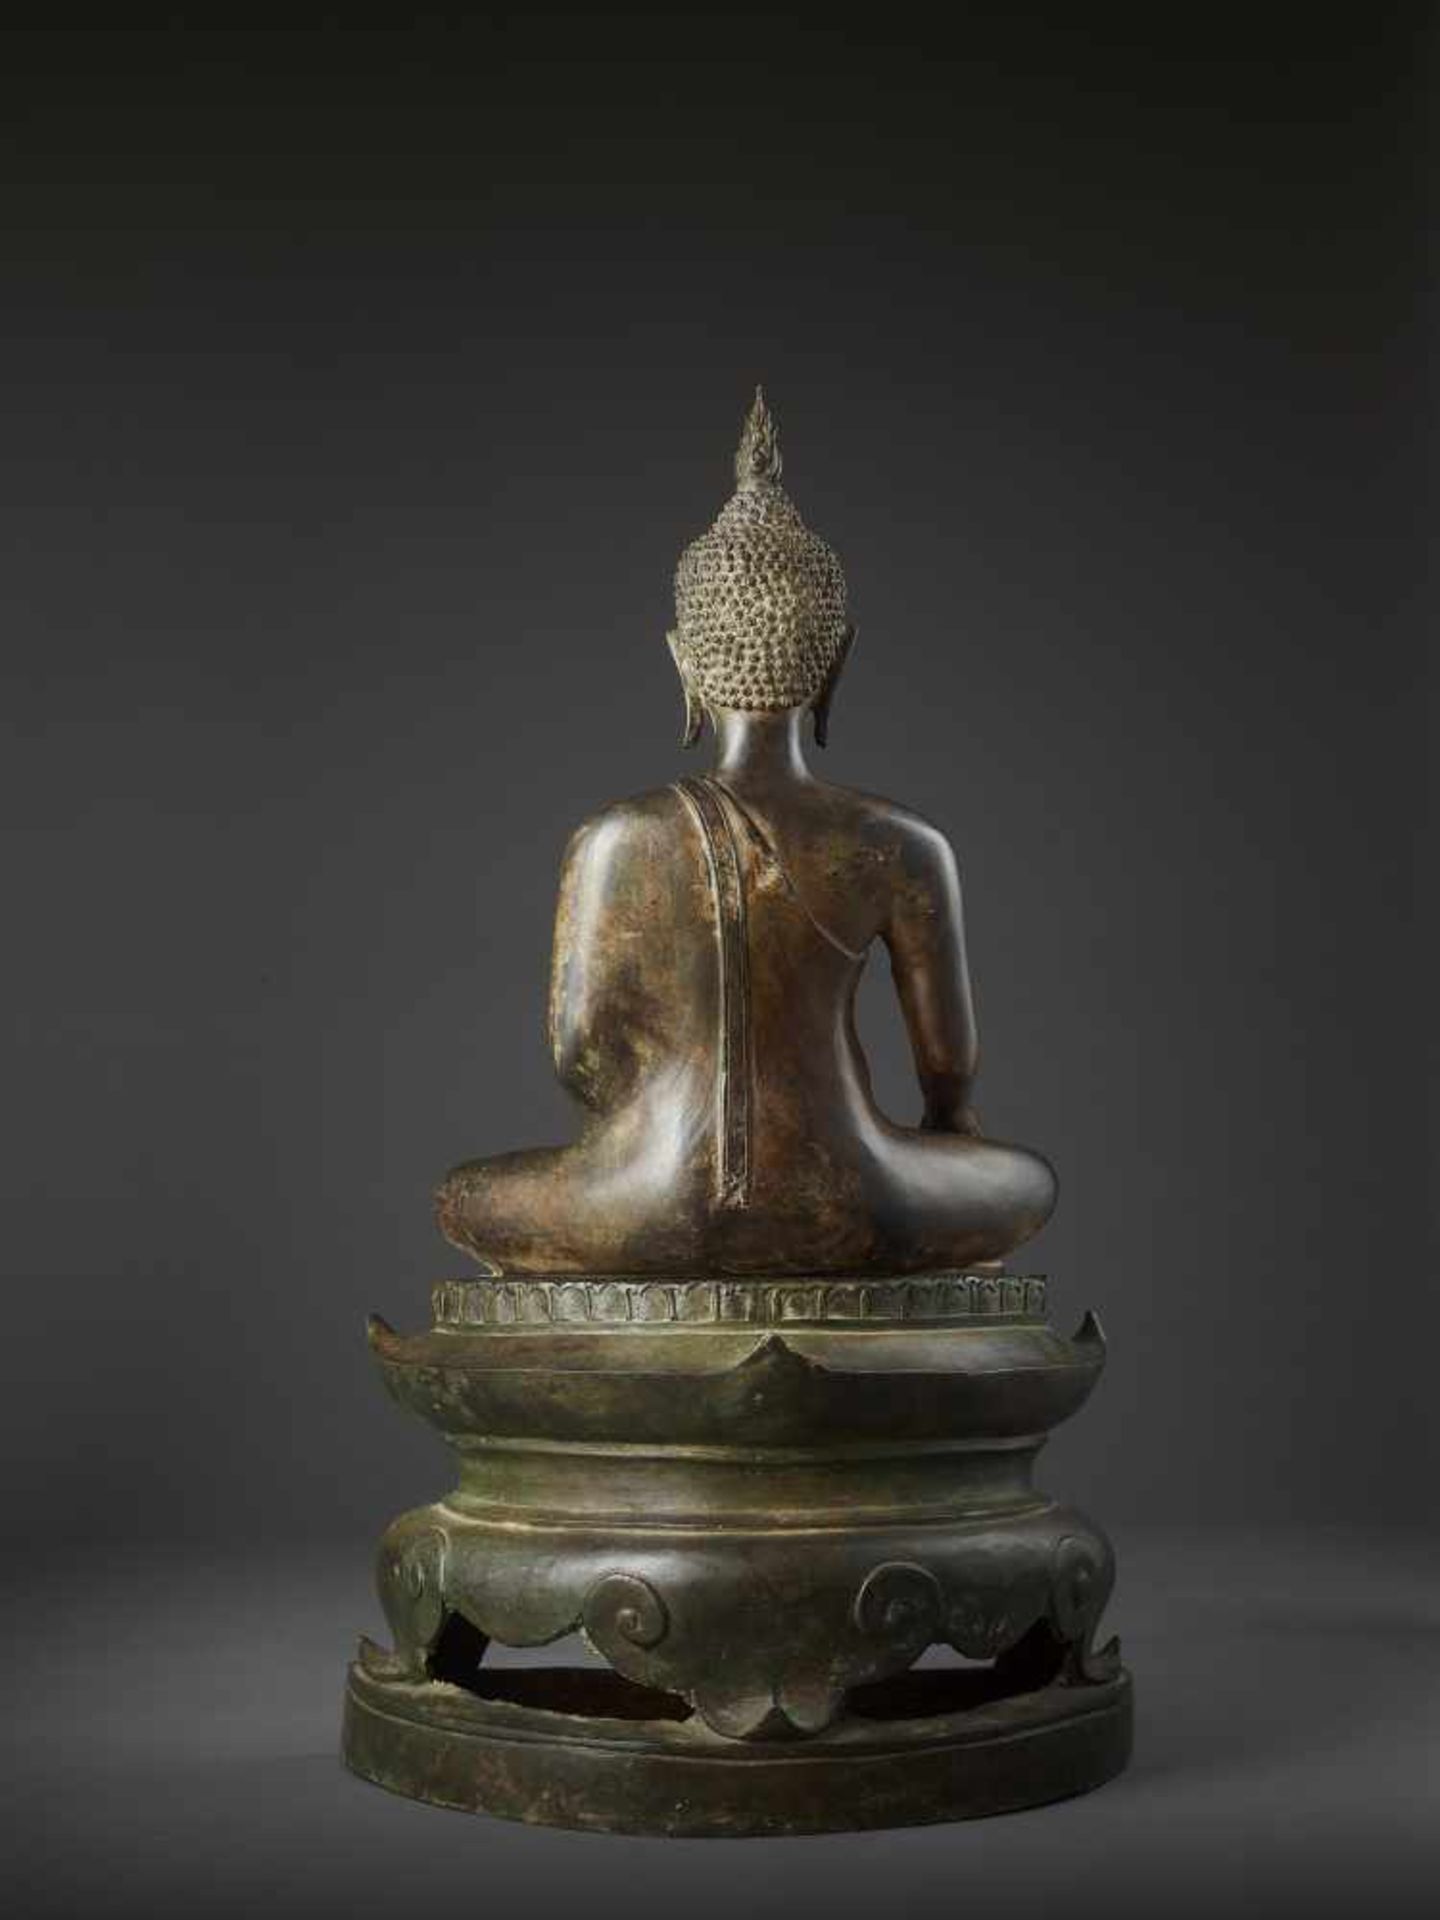 A LARGE SUKHOTHAI BUDDHA SHAKYAMUNIThailand, Sukhothai period, 15th-16th century. Cast bronze with - Image 9 of 12